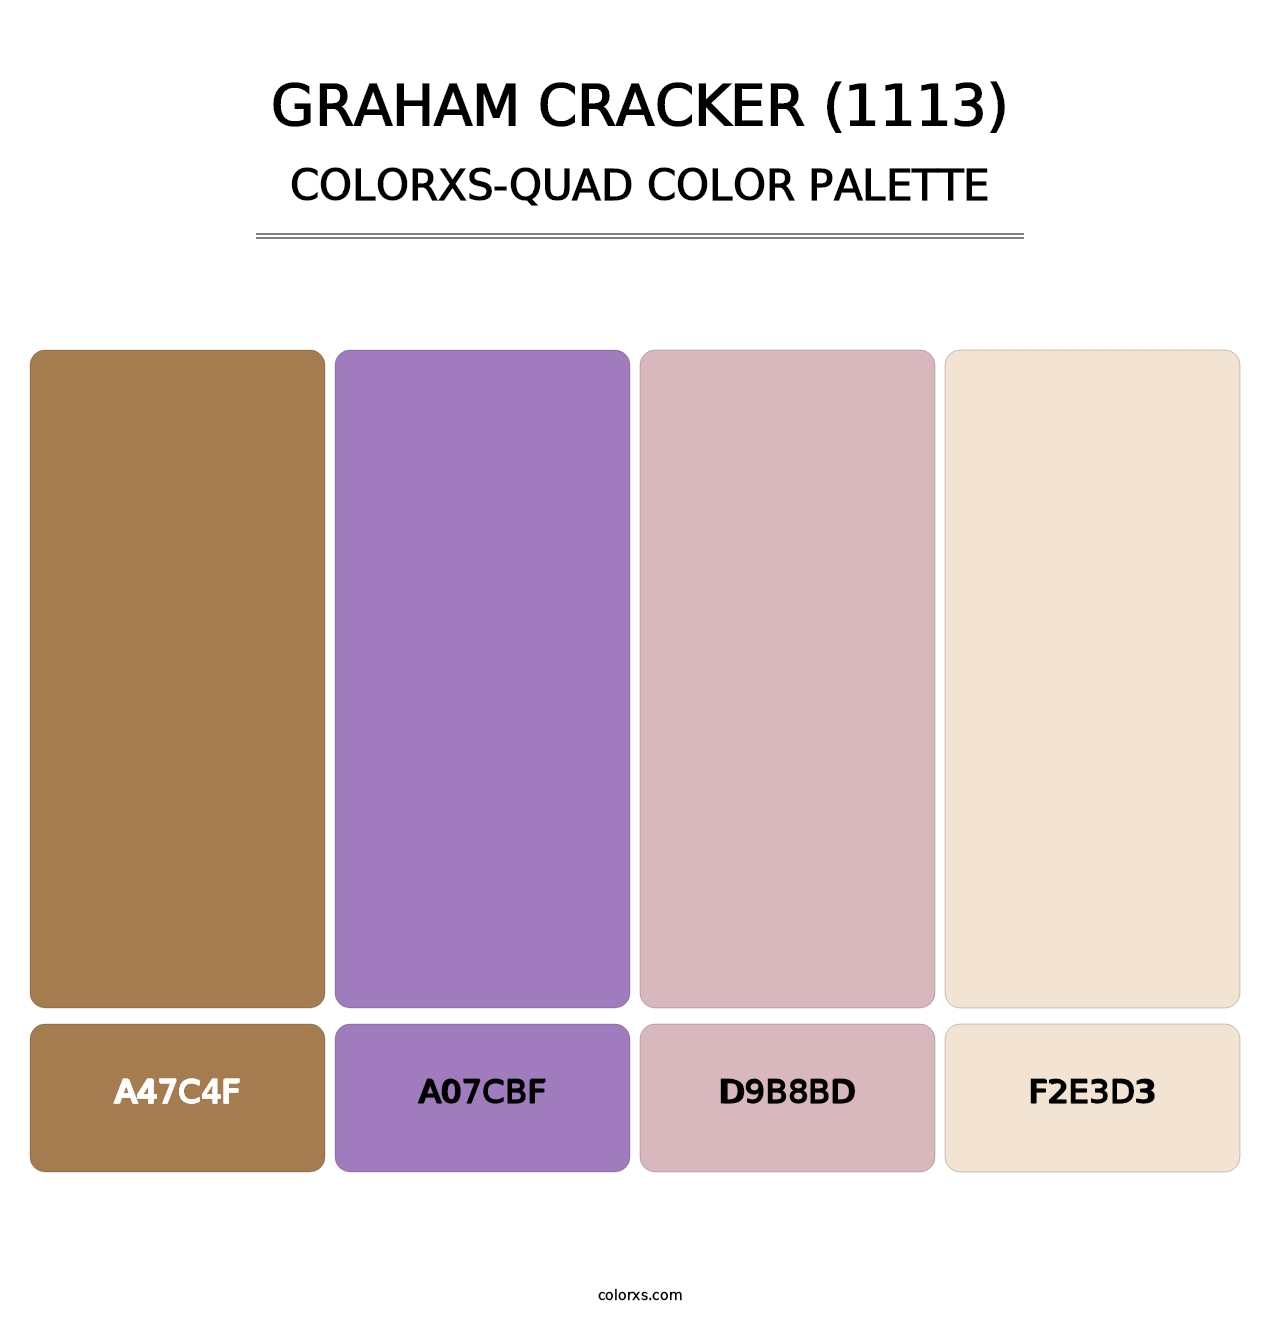 Graham Cracker (1113) - Colorxs Quad Palette